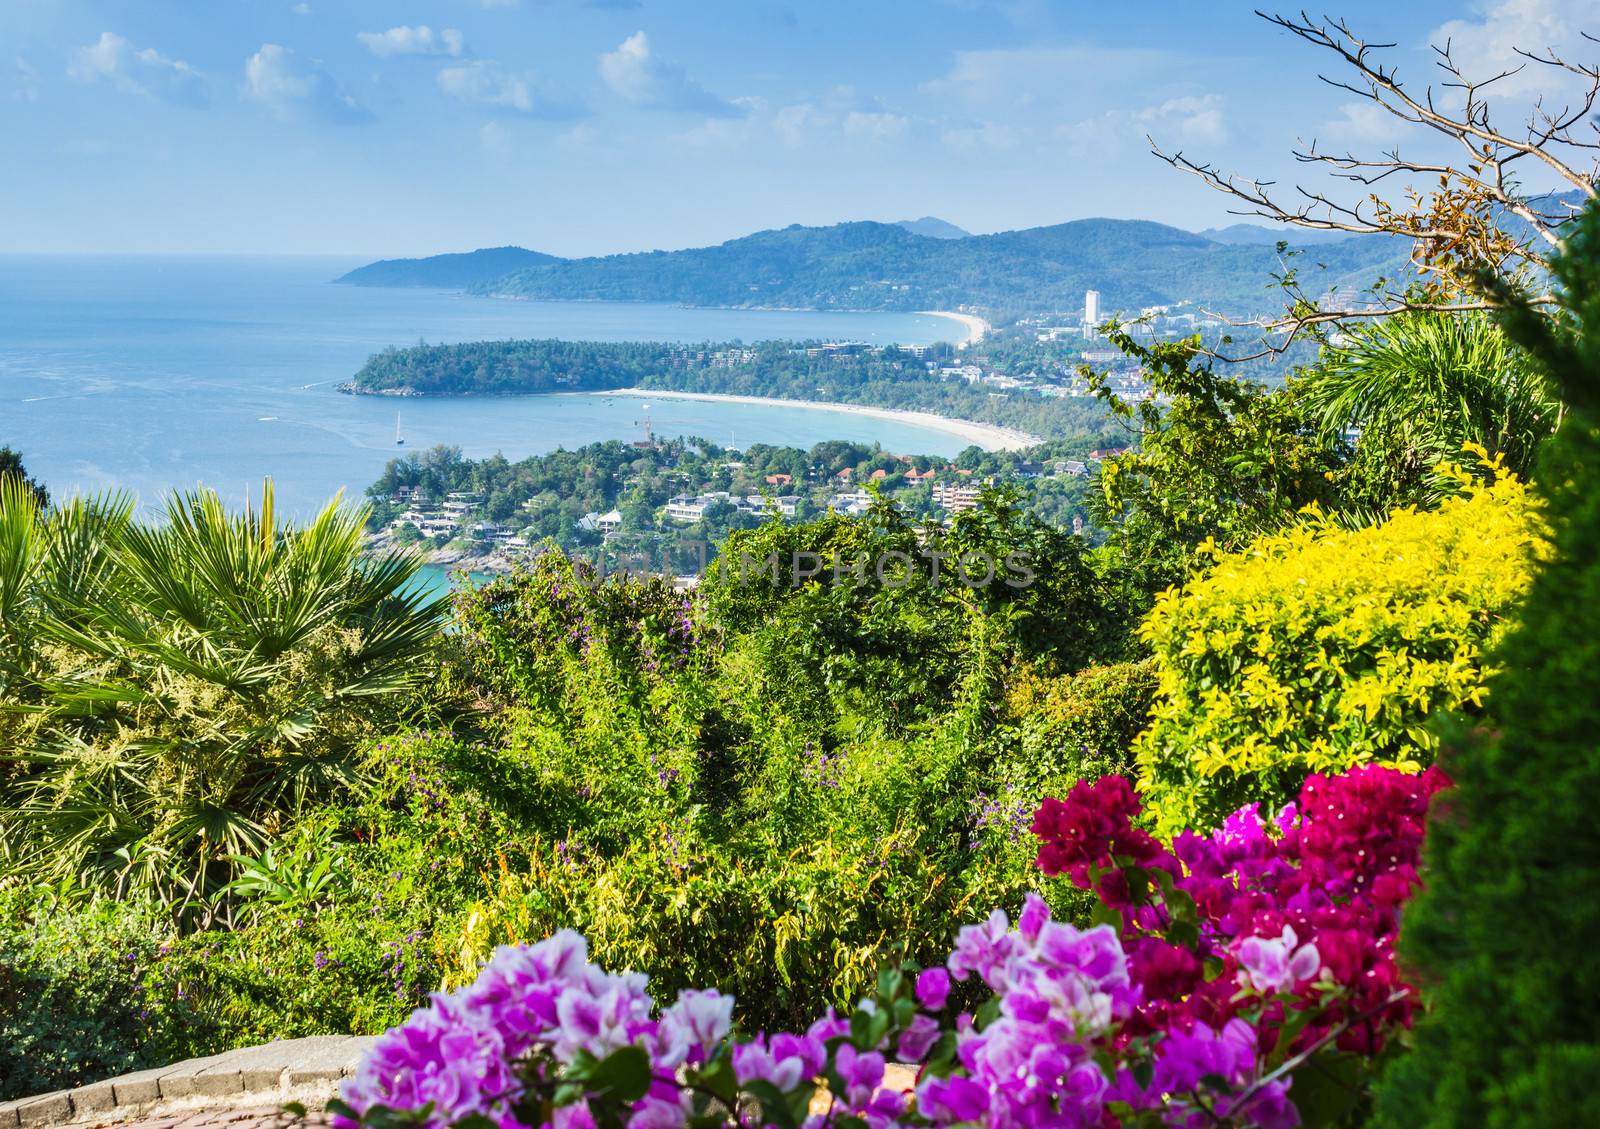 Beautiful view of Phuket island by oleg_zhukov